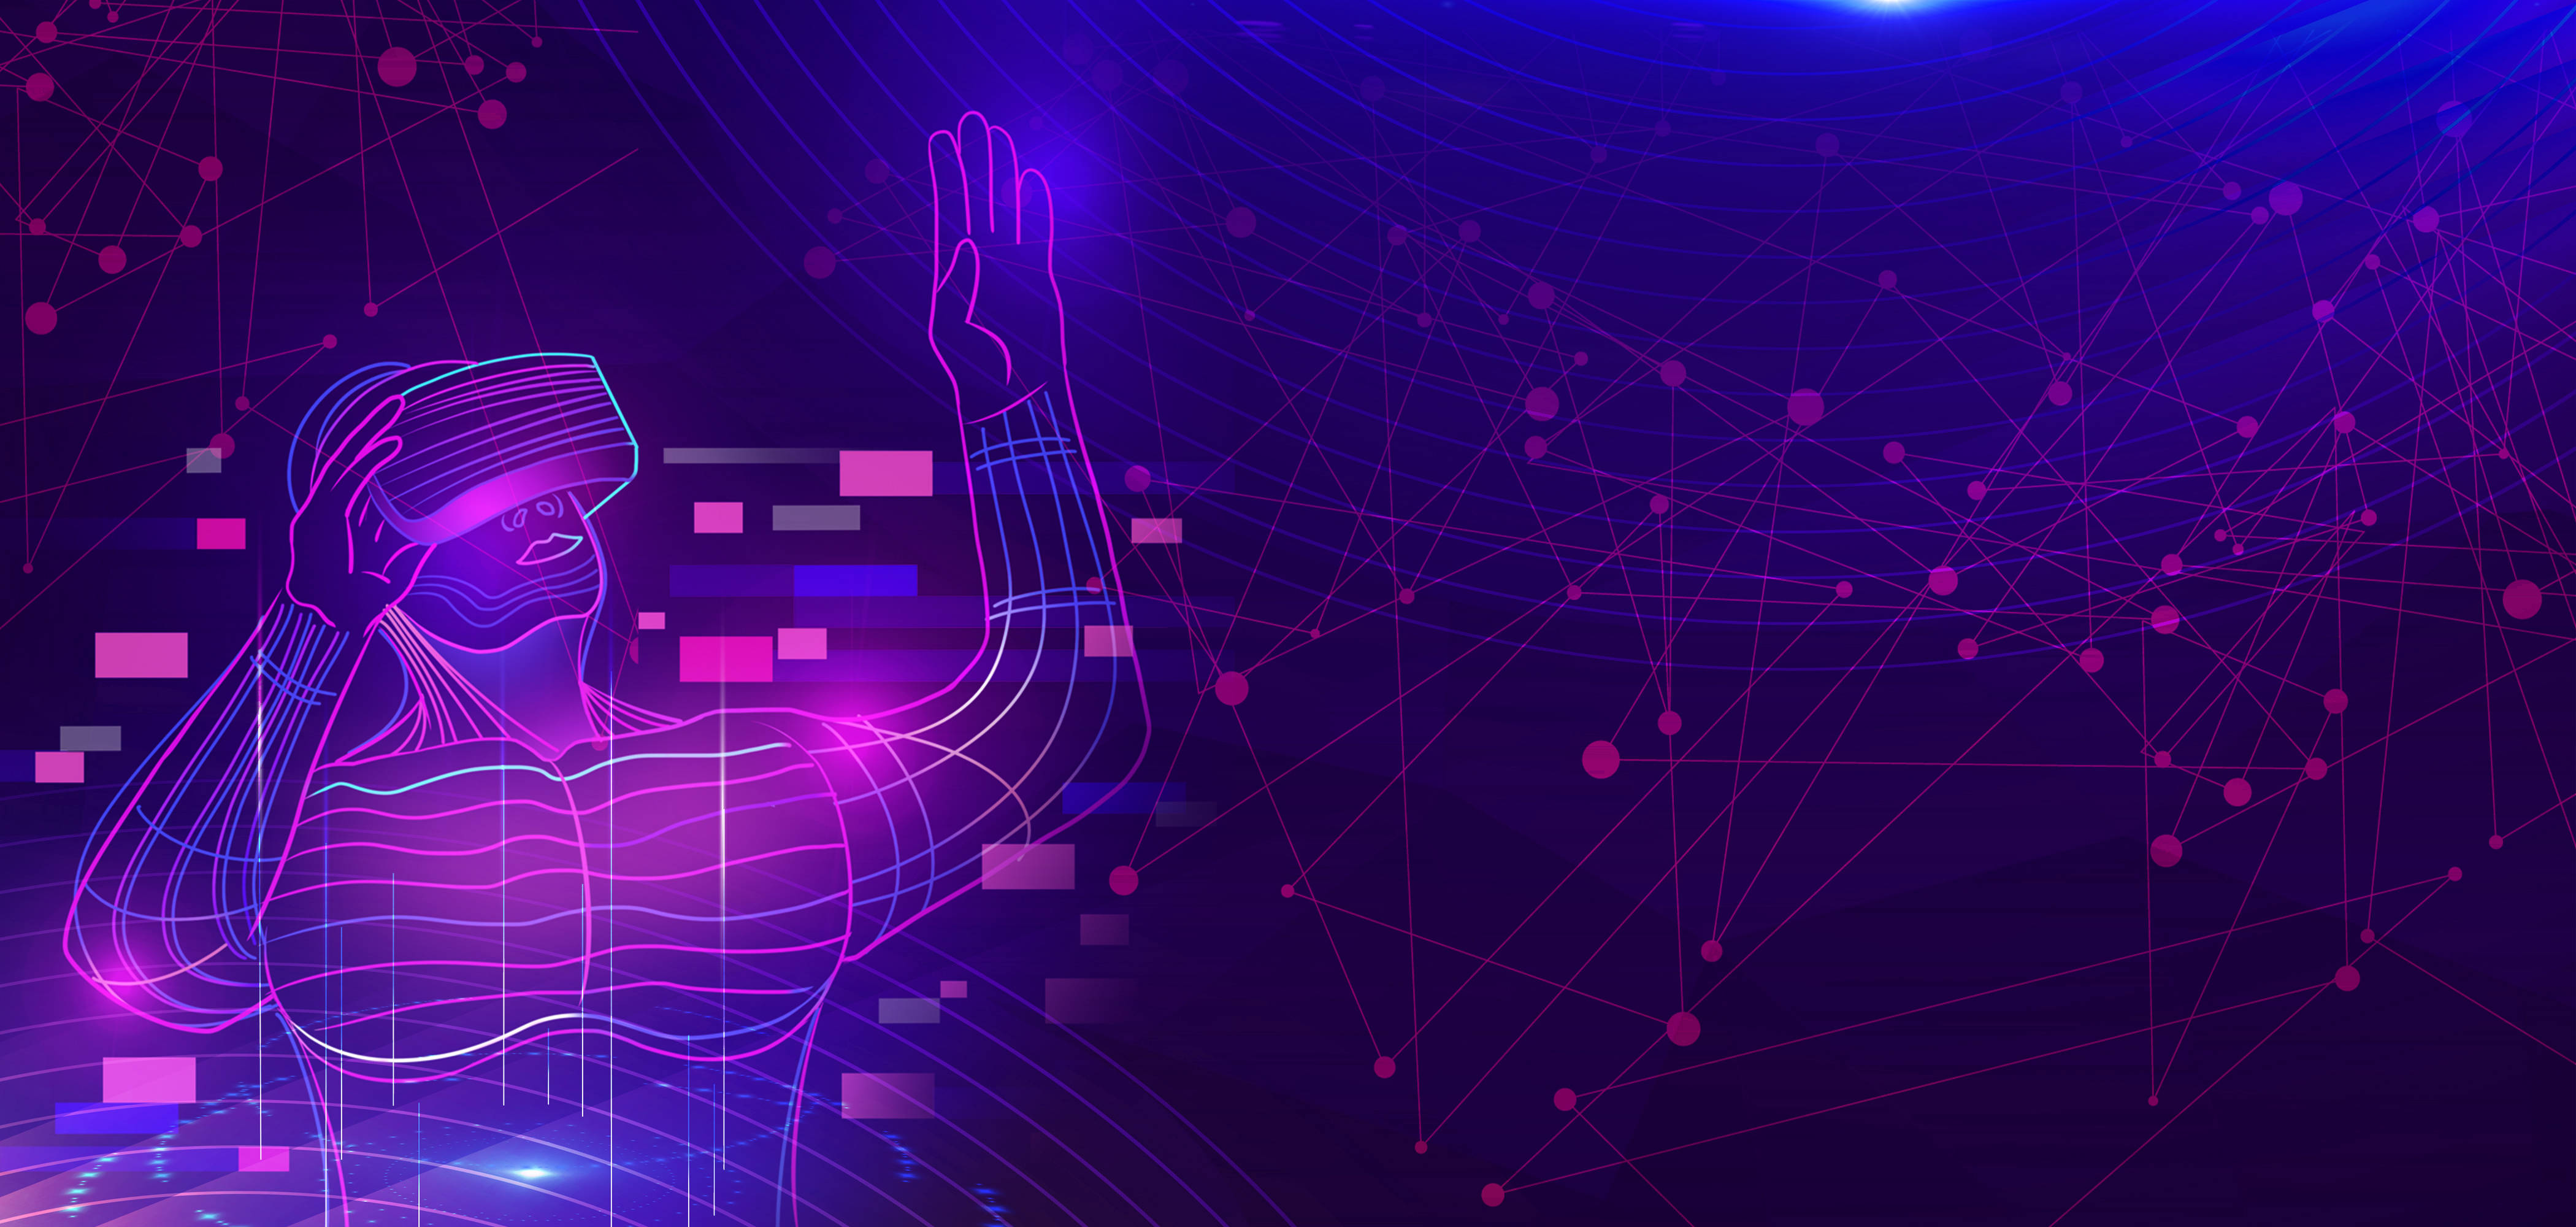 这是一张描绘虚拟现实体验的插图，展示了一个人佩戴头戴式设备，背景是紫色调的抽象数字网络图案。